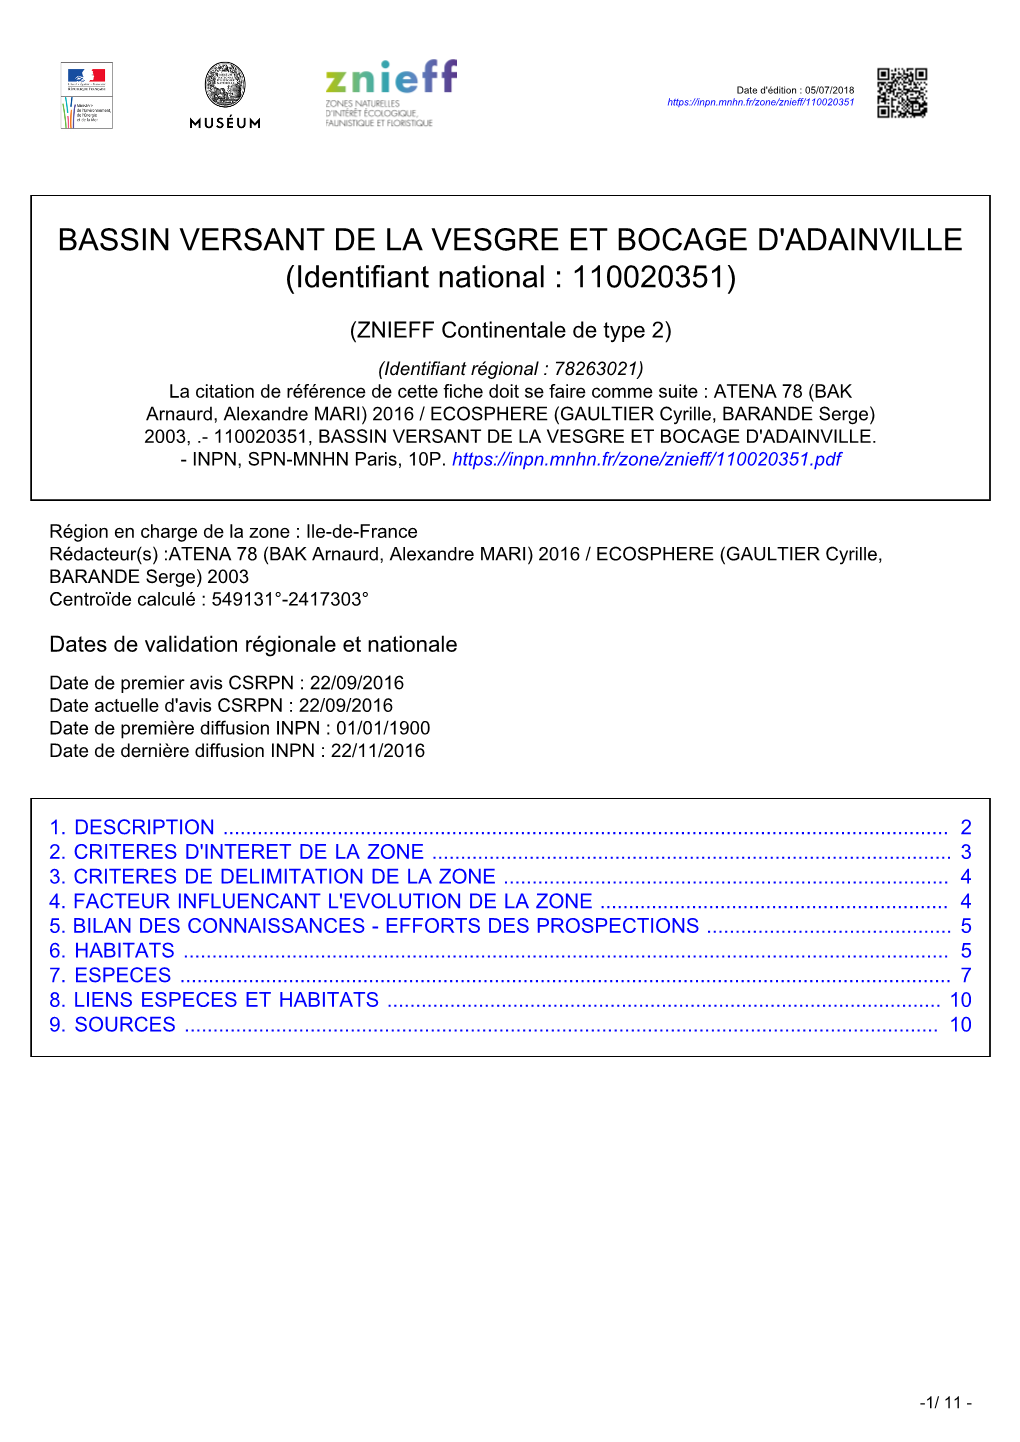 BASSIN VERSANT DE LA VESGRE ET BOCAGE D'adainville (Identifiant National : 110020351)